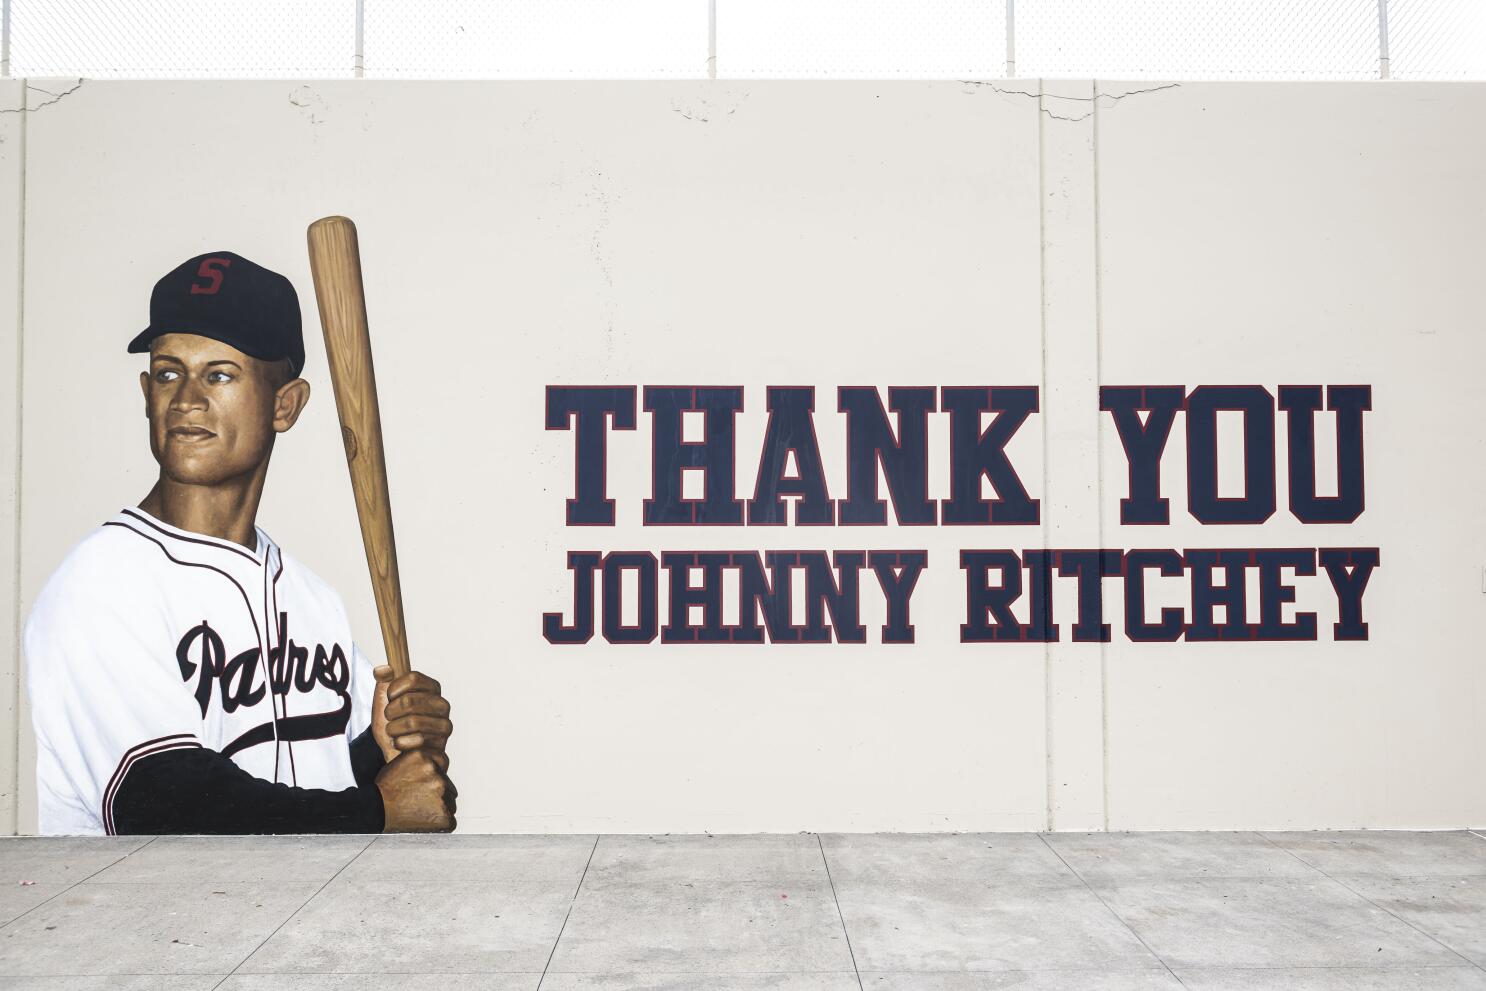 Johnny Baseball' broke barriers, made San Diegans proud as a